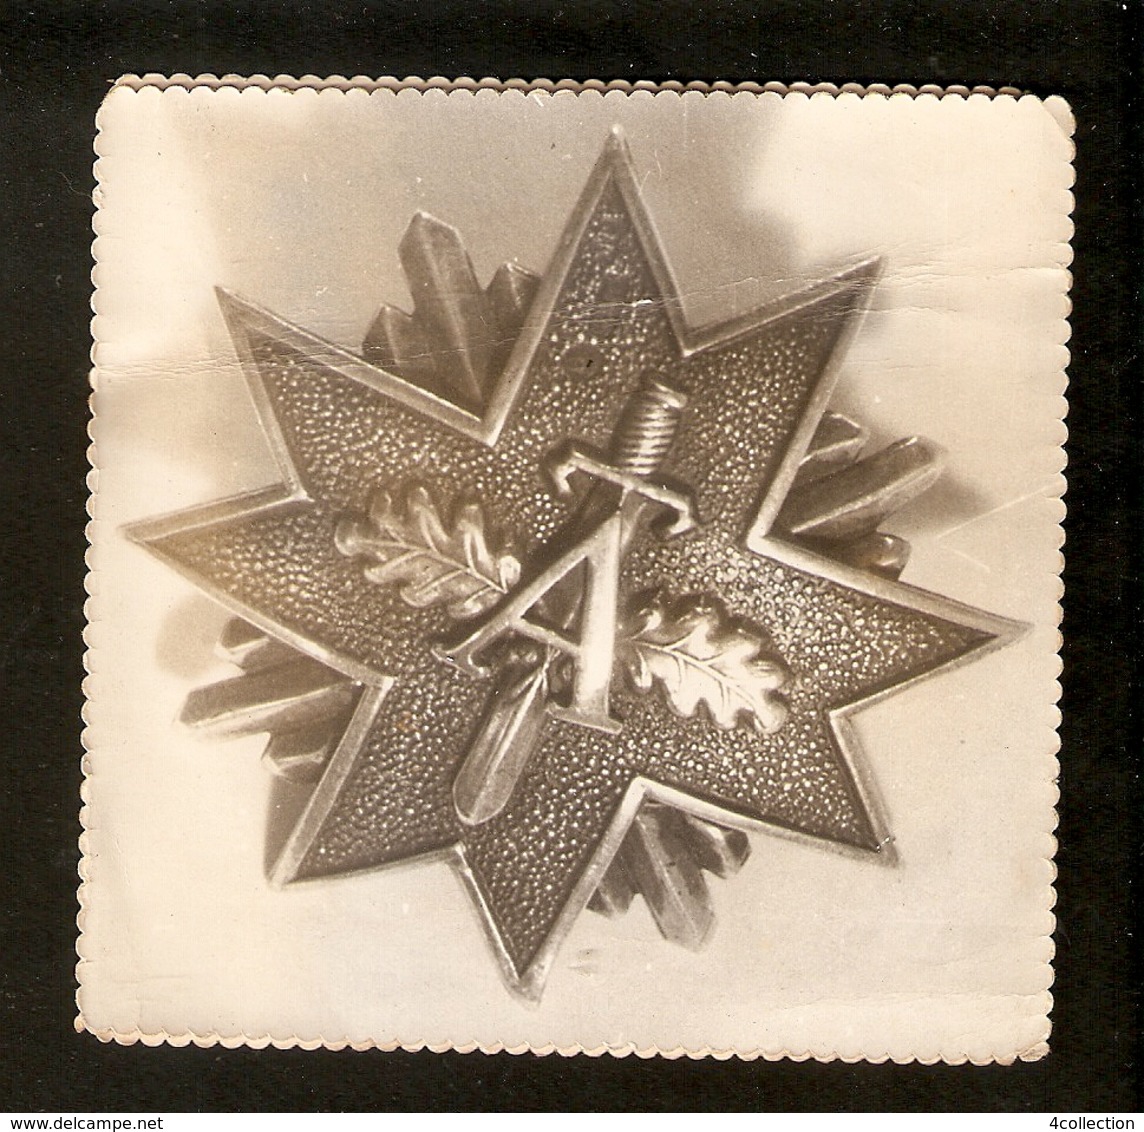 K Old 2 Photos Latvia Pin Badge Order Medal Protecting Guard Distinction Distinctive Sign Letter A Sword Oak Leaves - Fotografie